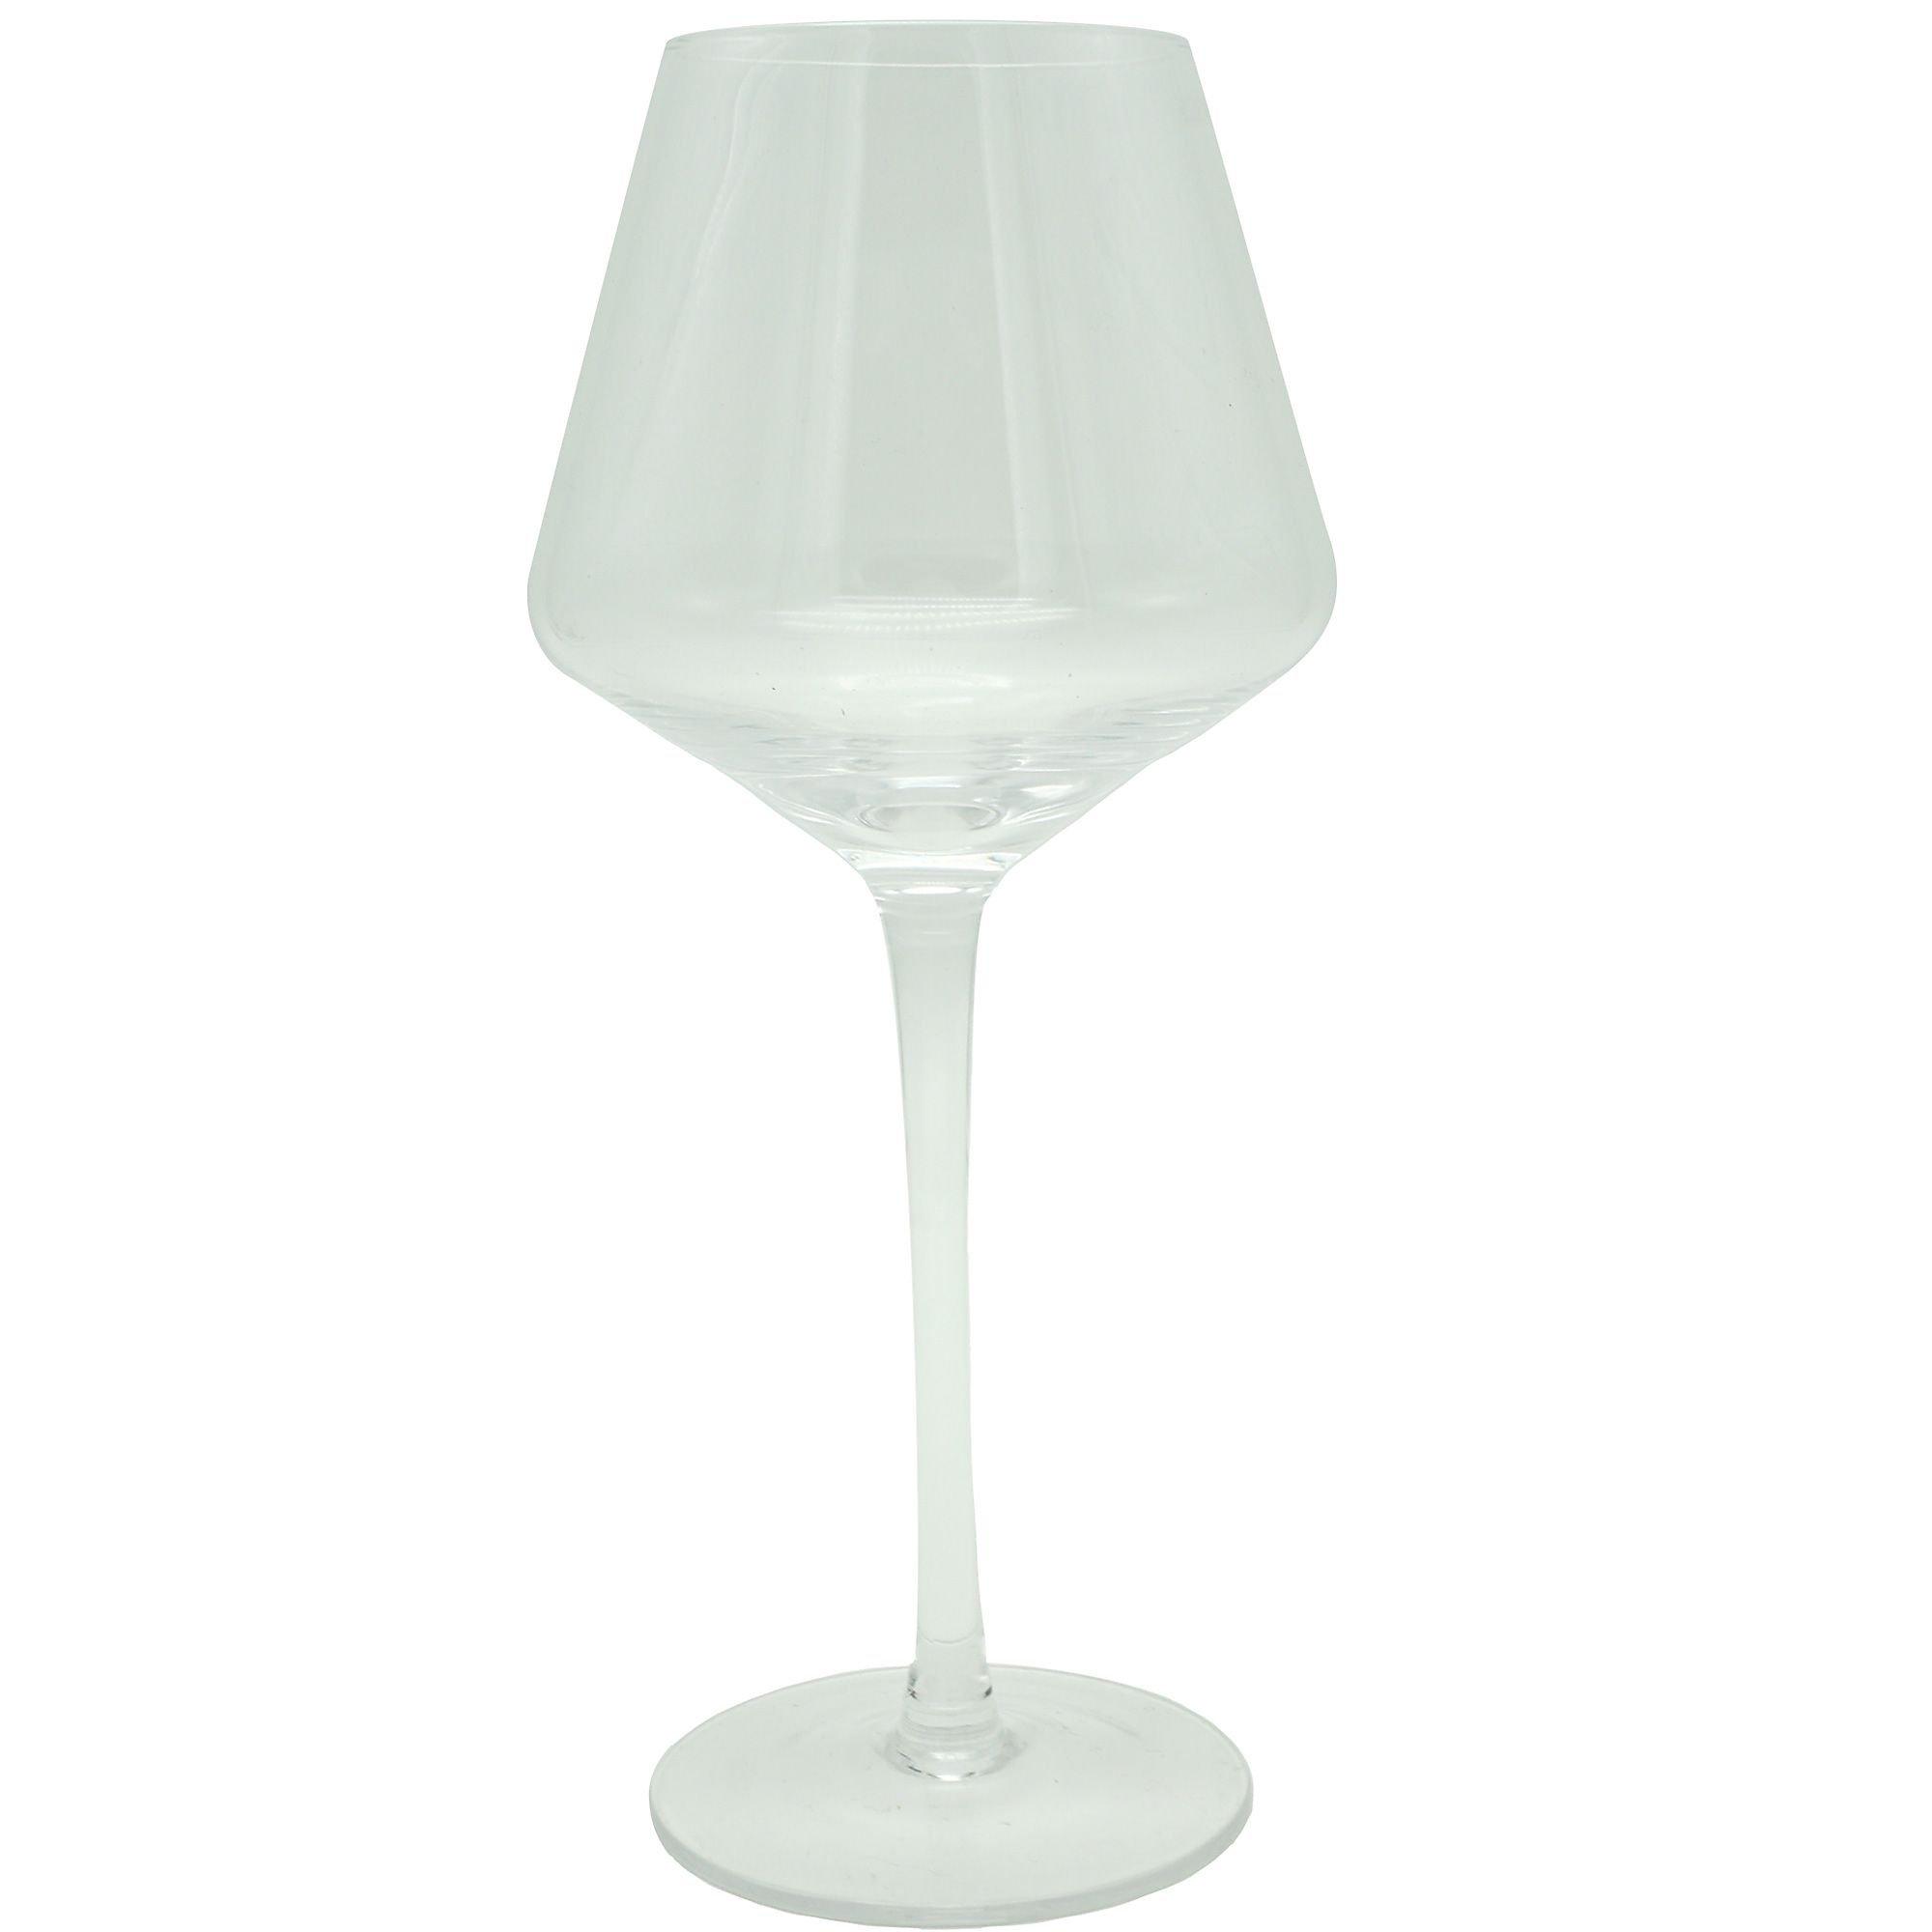 15oz 4pk Glass Atherton White Wine Glasses - Threshold™